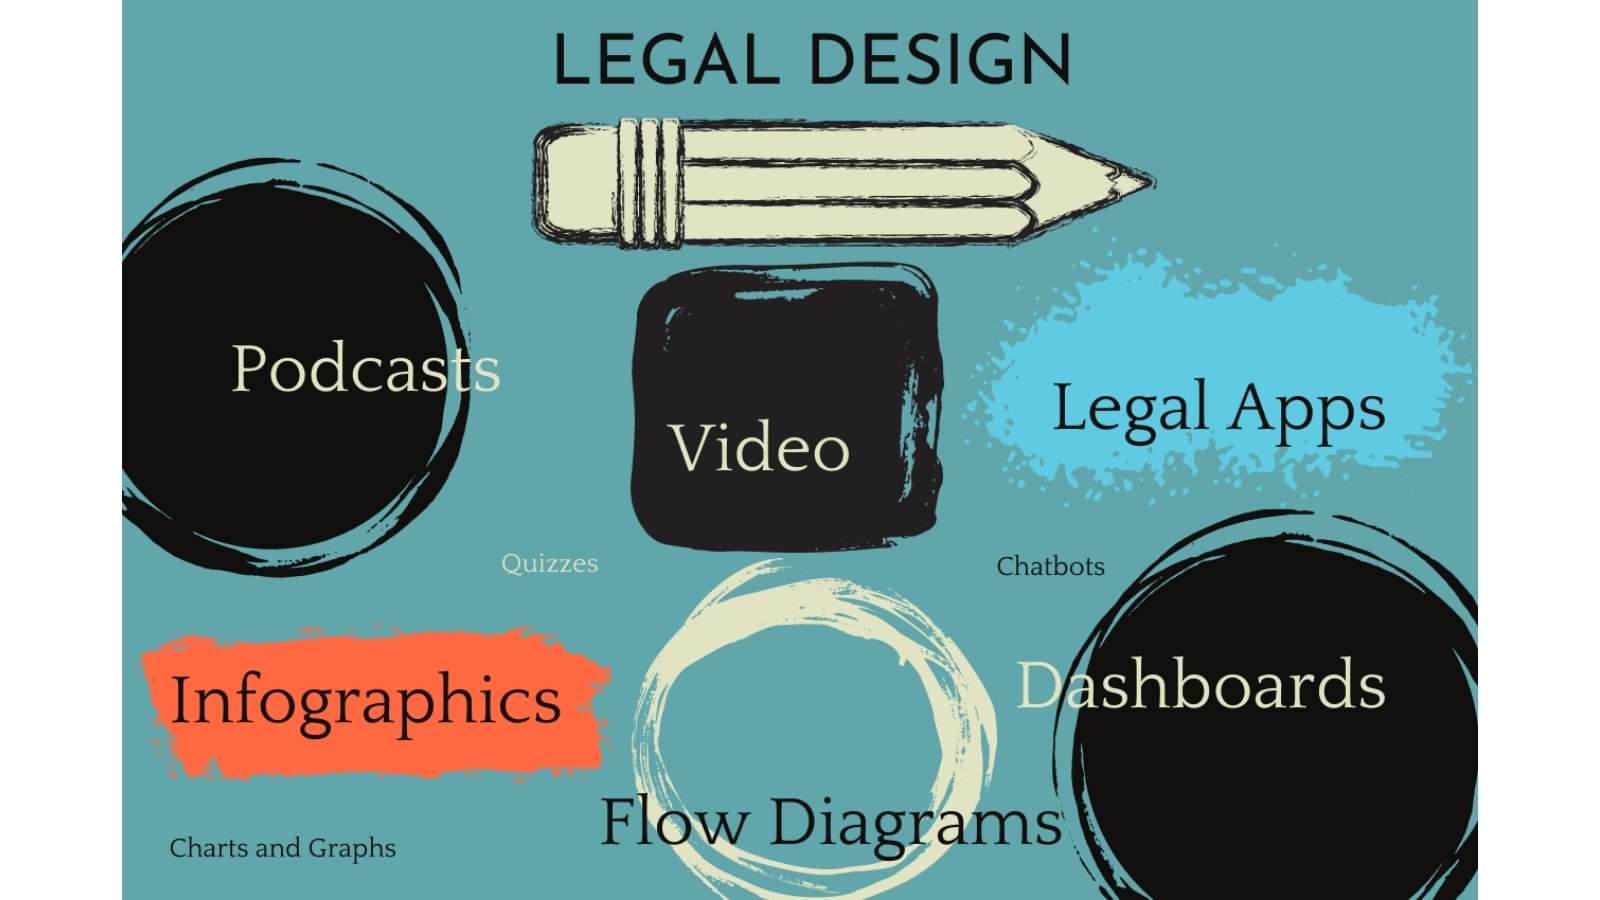 Legal design elements